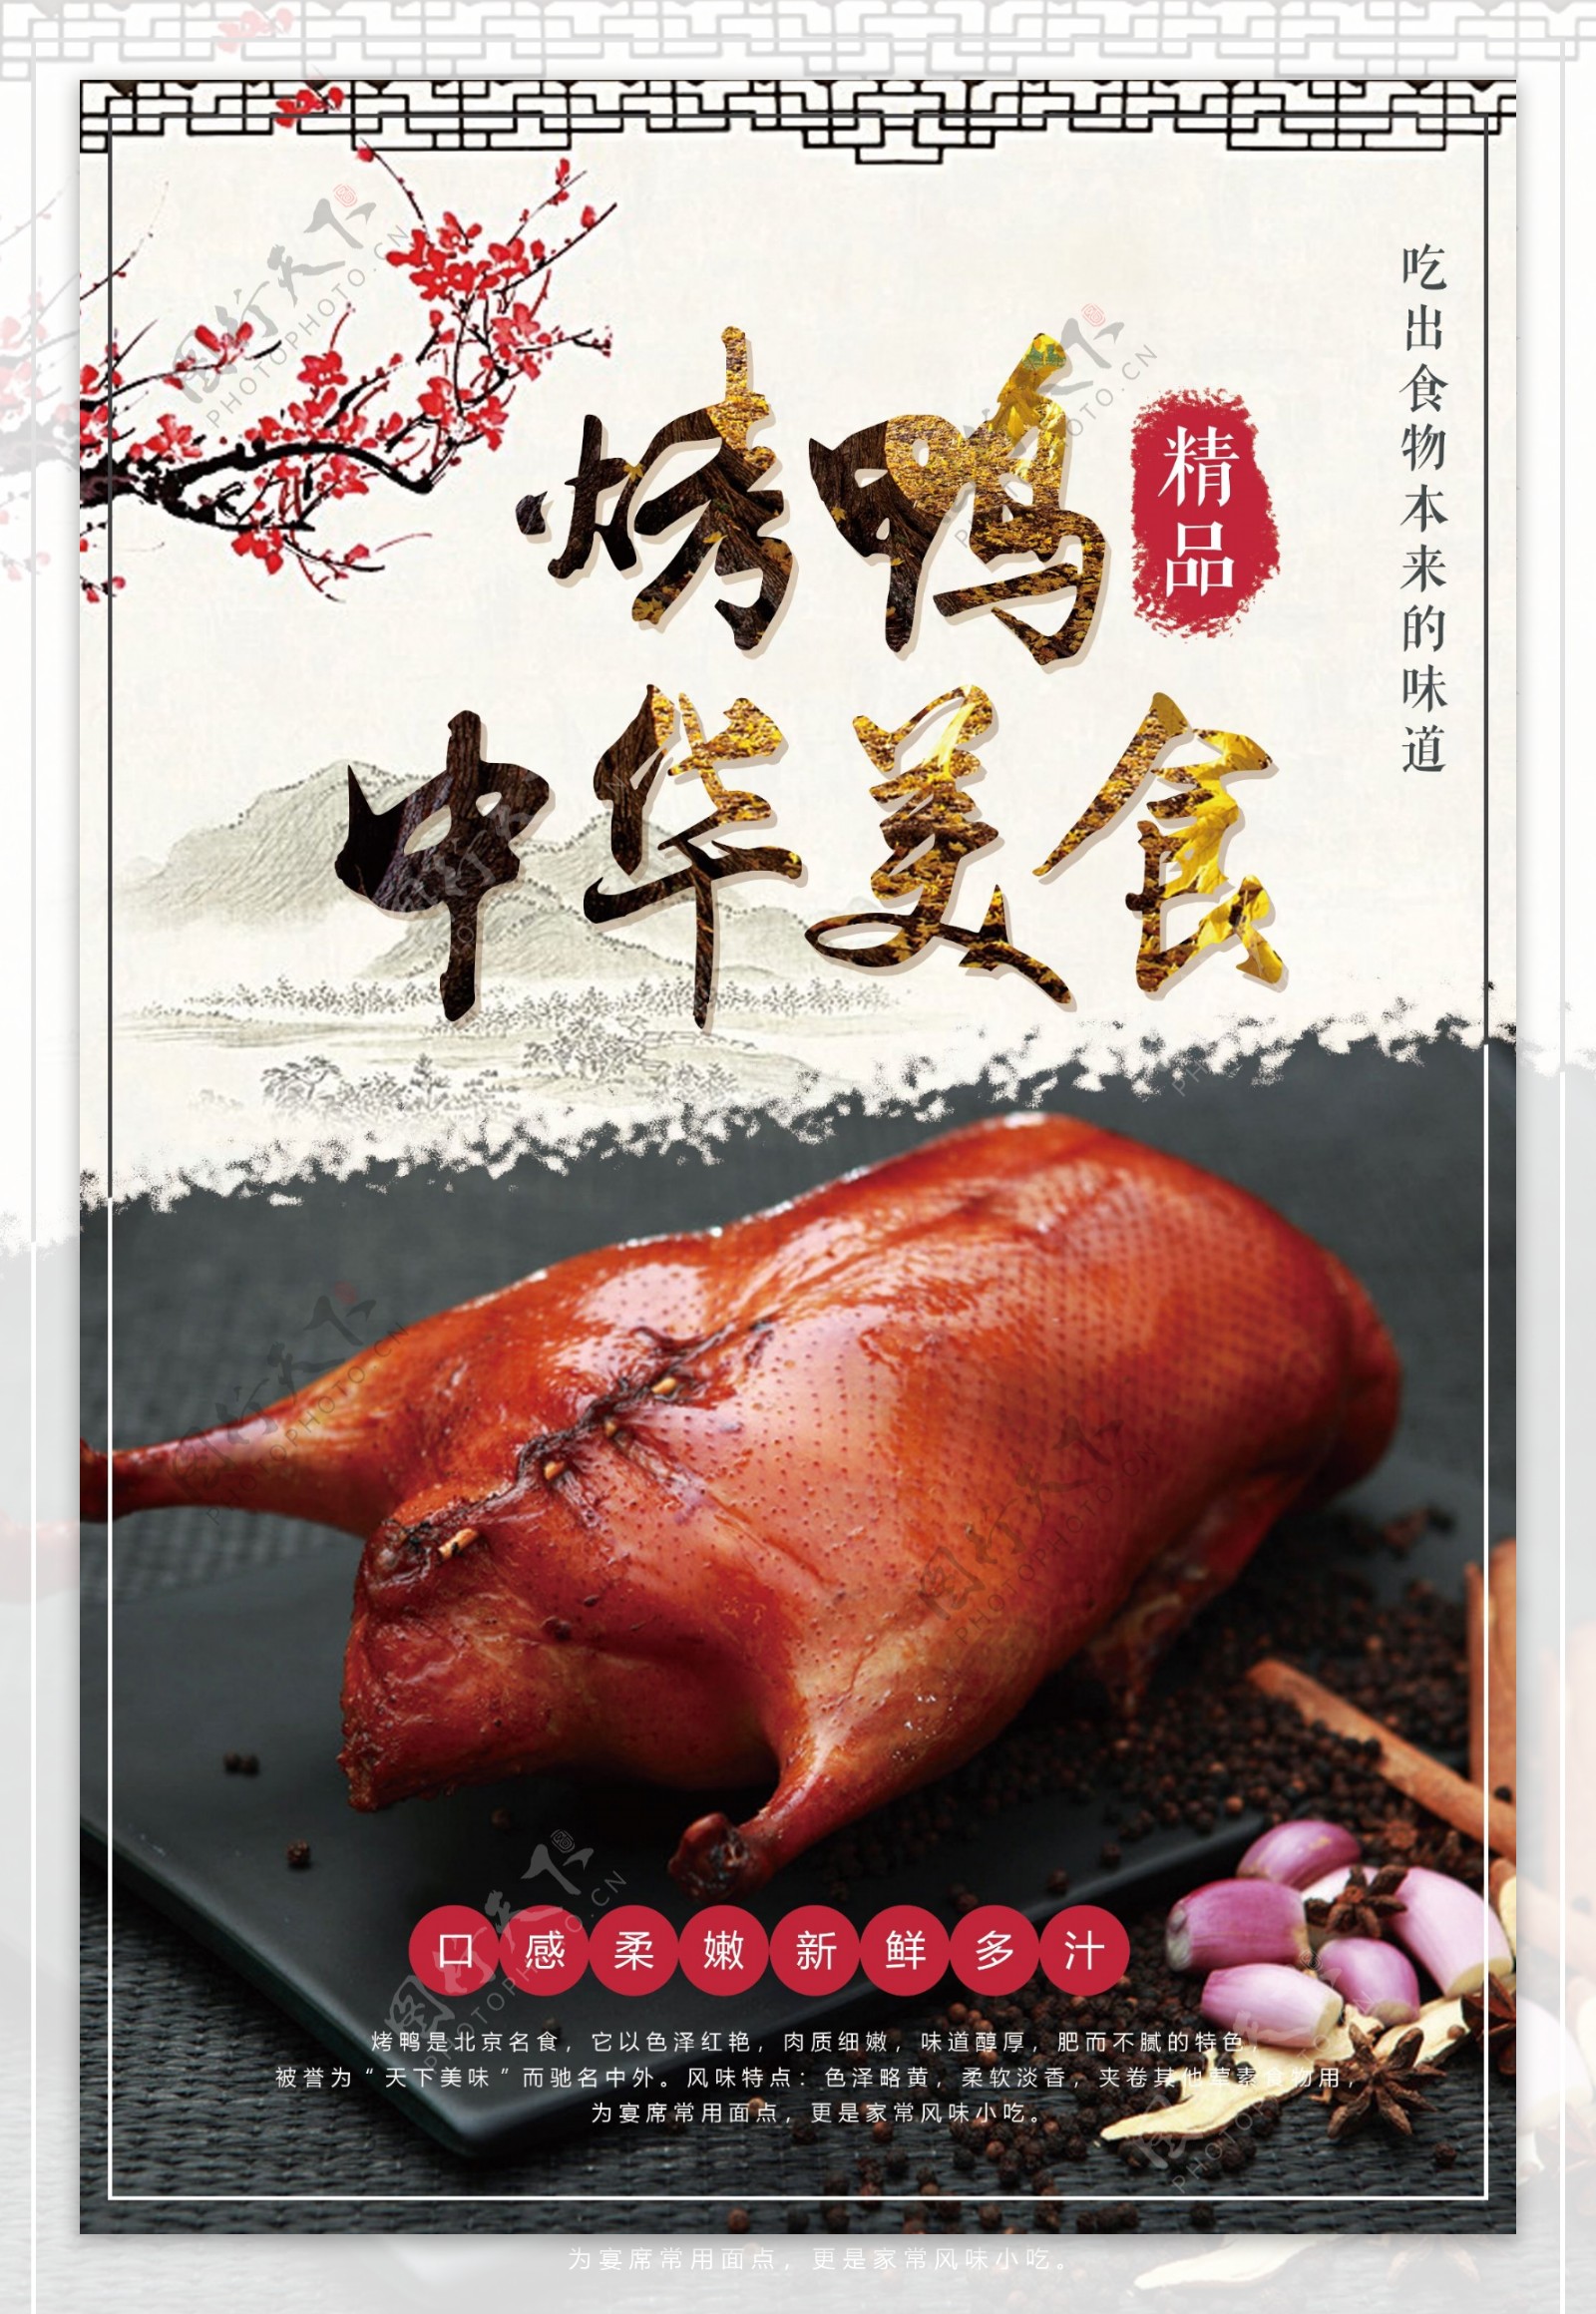 中华美食烤鸭食品海报设计